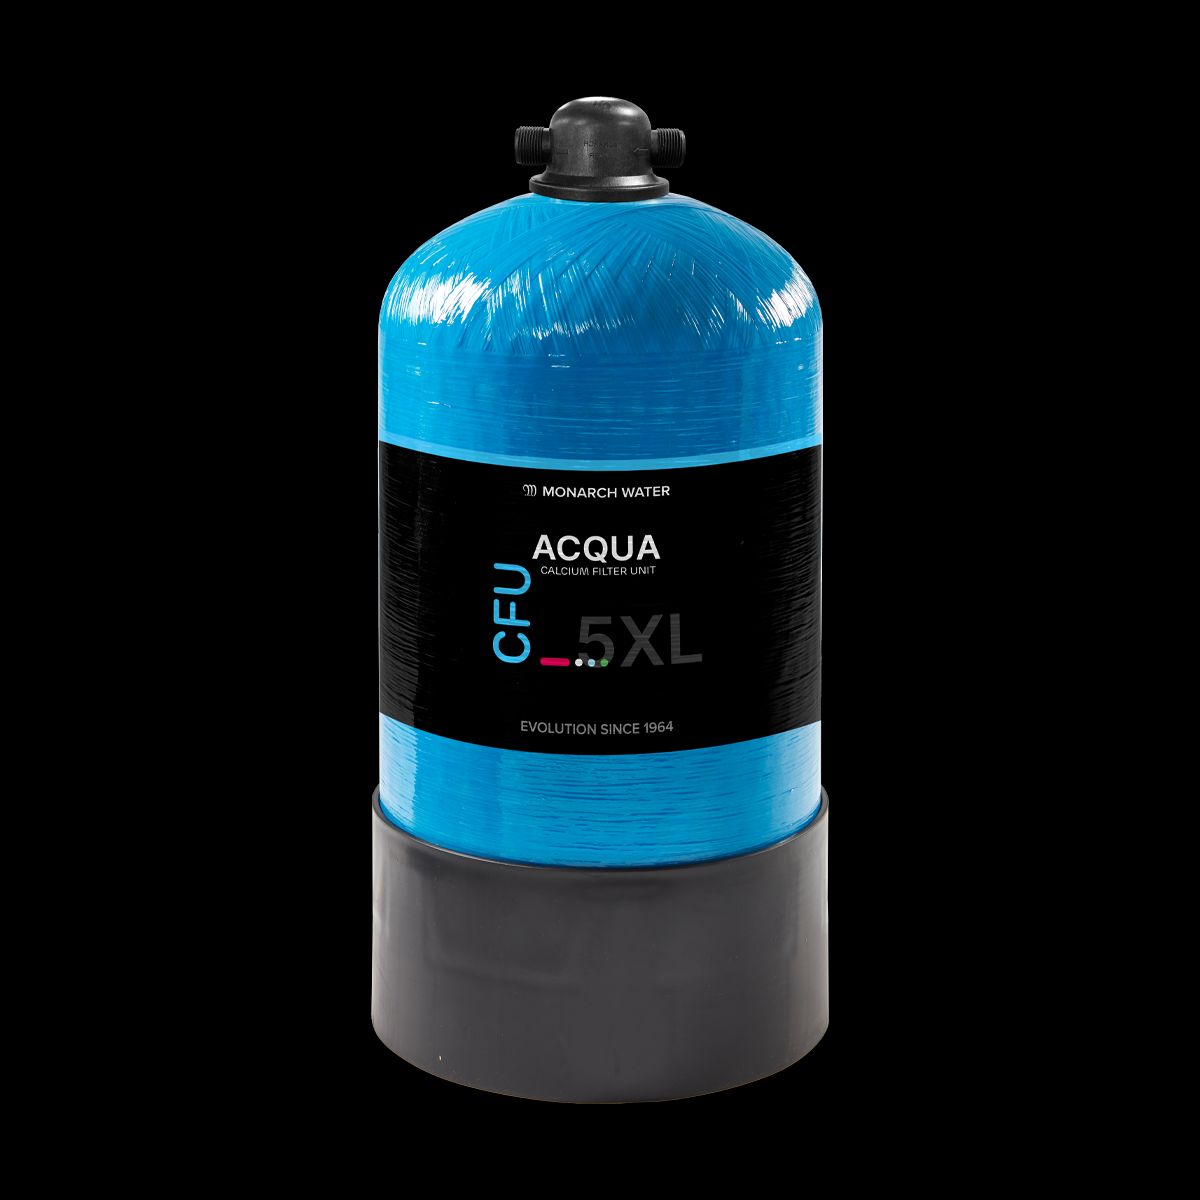 Monarch Calcium Filter Unit ACQUA 5XL